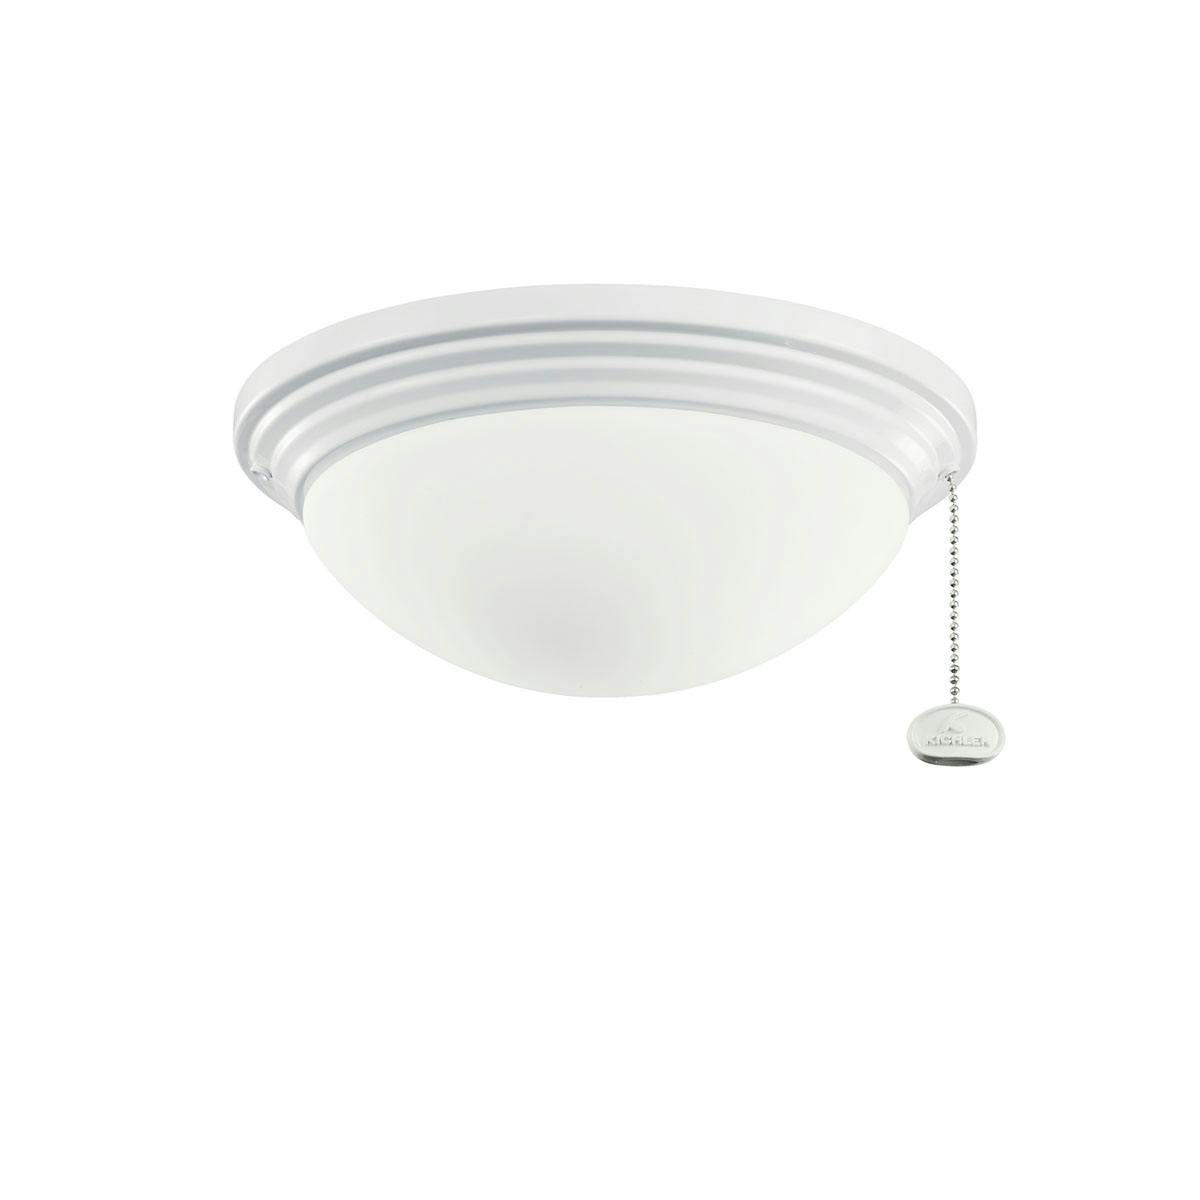 Ceiling Fan LED Wet Light Kit White on a white background